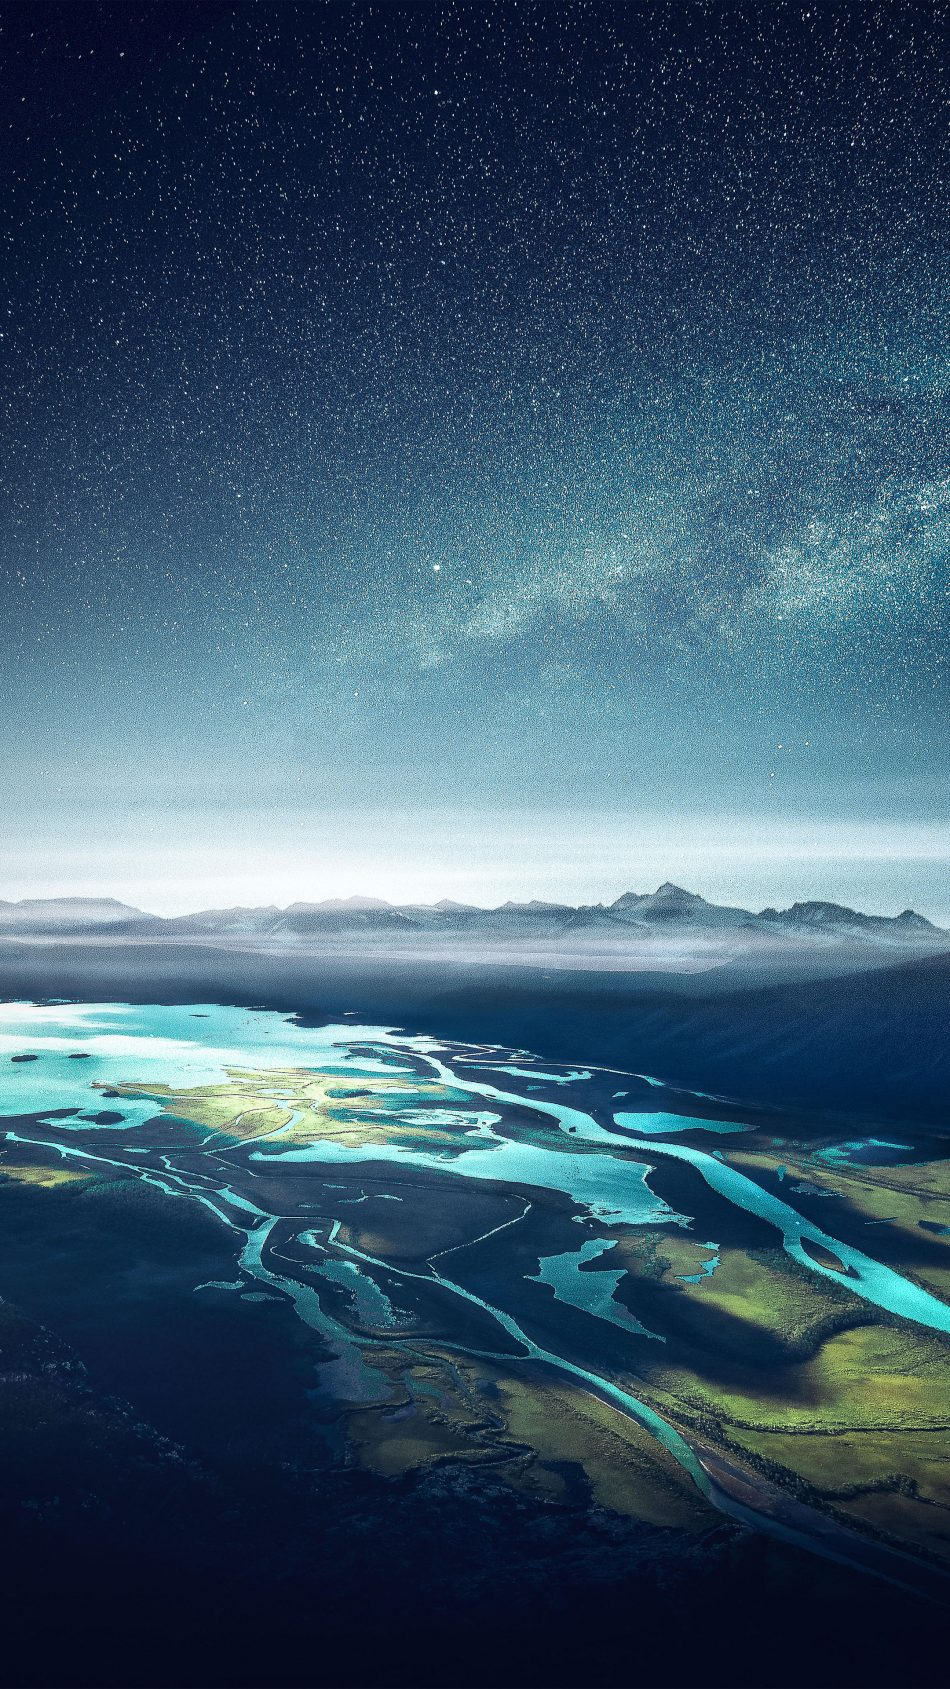 Mountain Range River Landscape Starry Sky 4K Ultra HD Mobile Wallpaper 4K of Wallpaper for Andriod